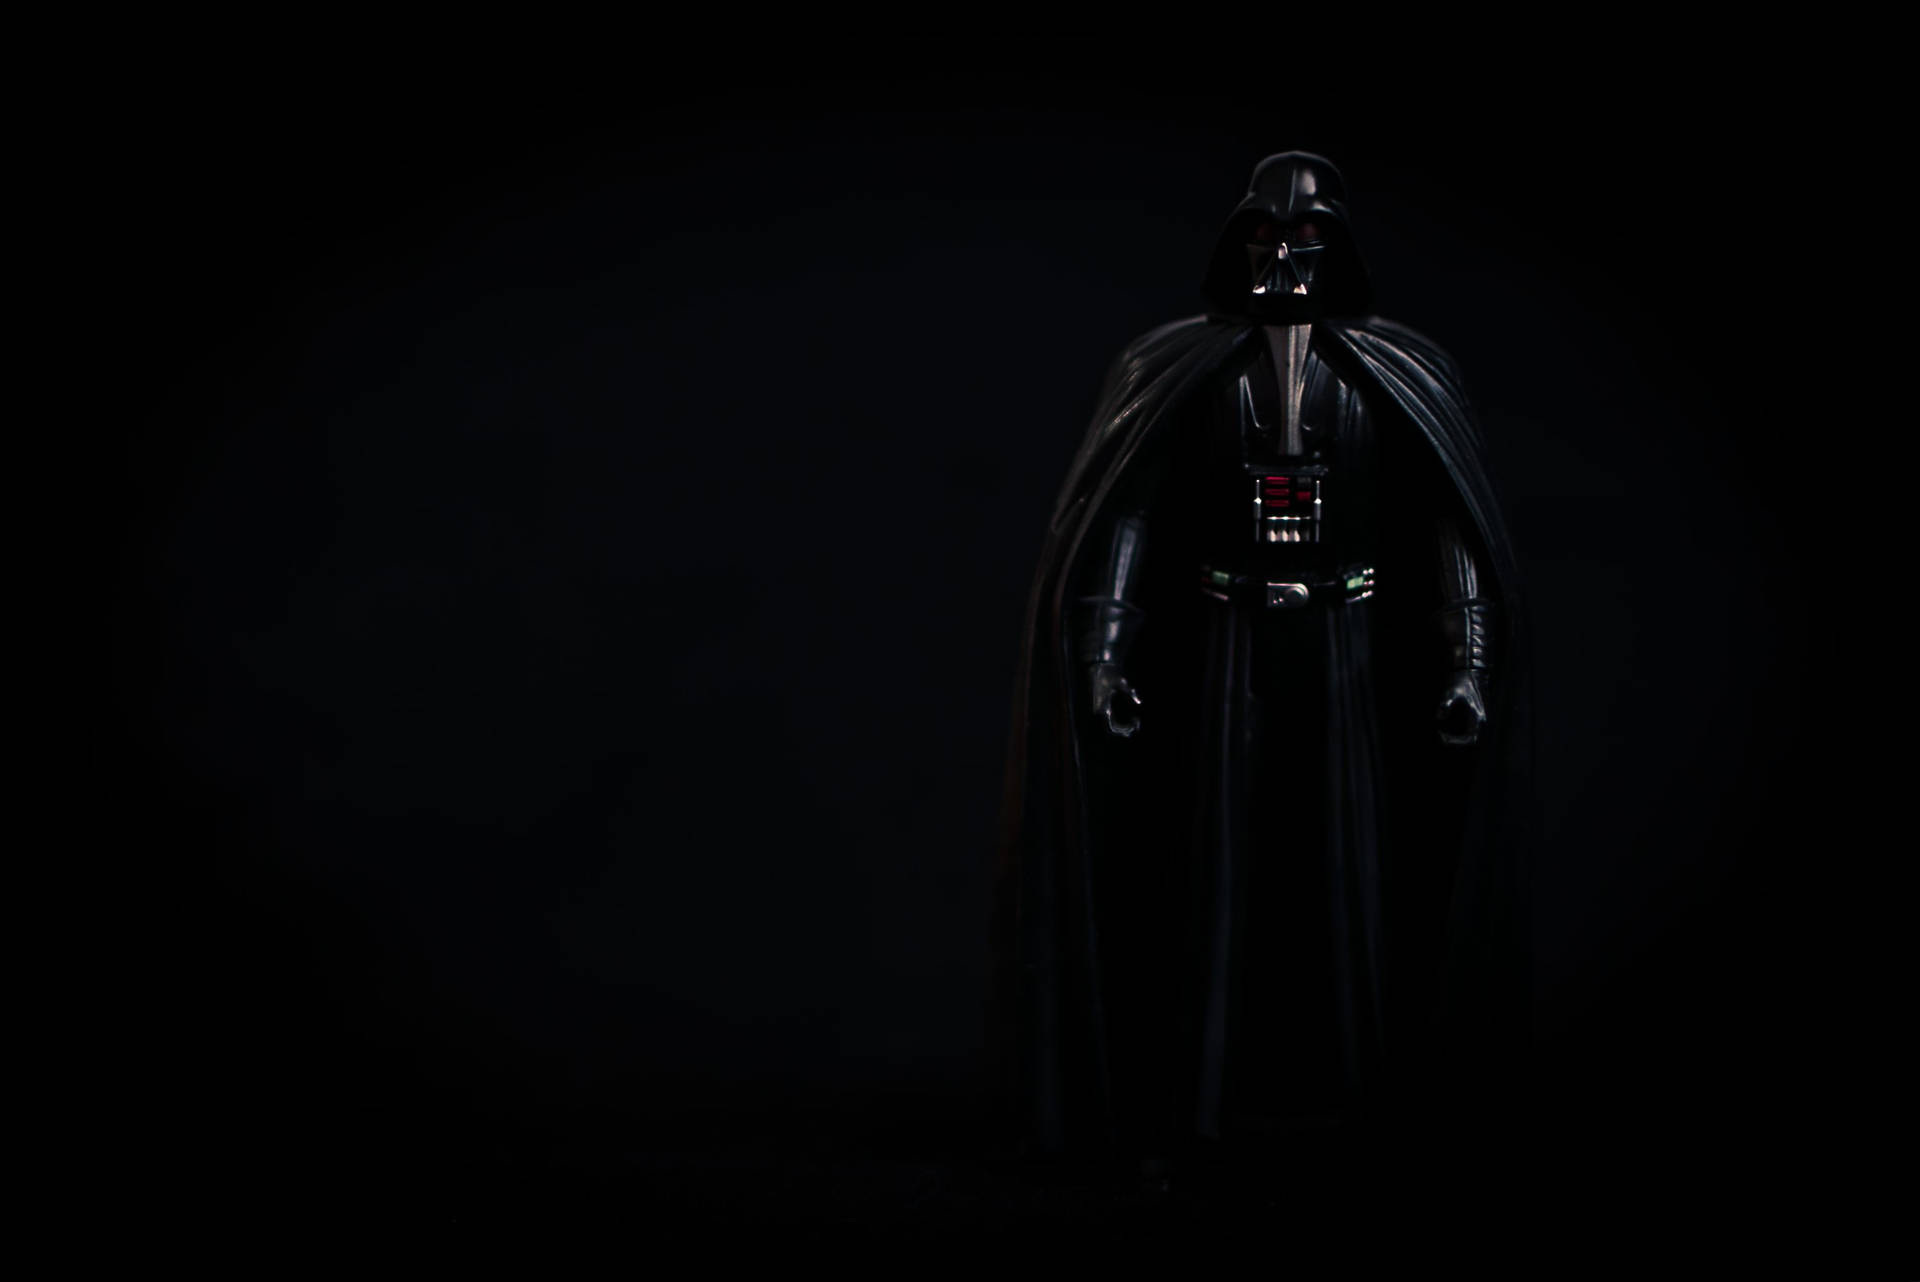 Star Wars Darth Vader In Black